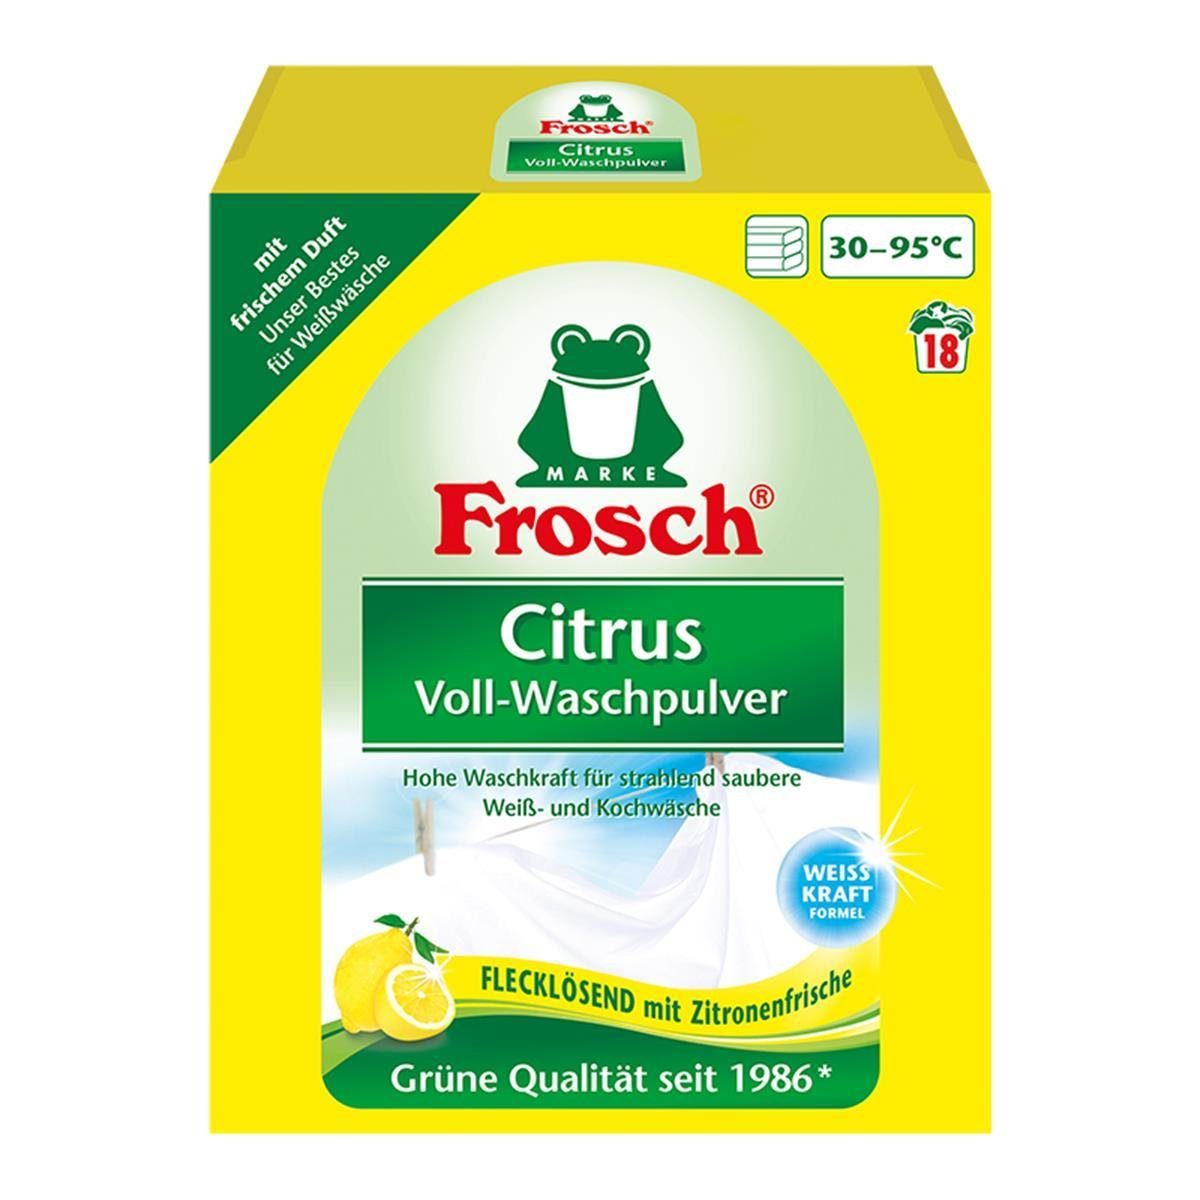 FROSCH Frosch Citrus Voll-Waschpulver 1,35 kg - Flecklösend mit Zitrone Vollwaschmittel | Waschmittel